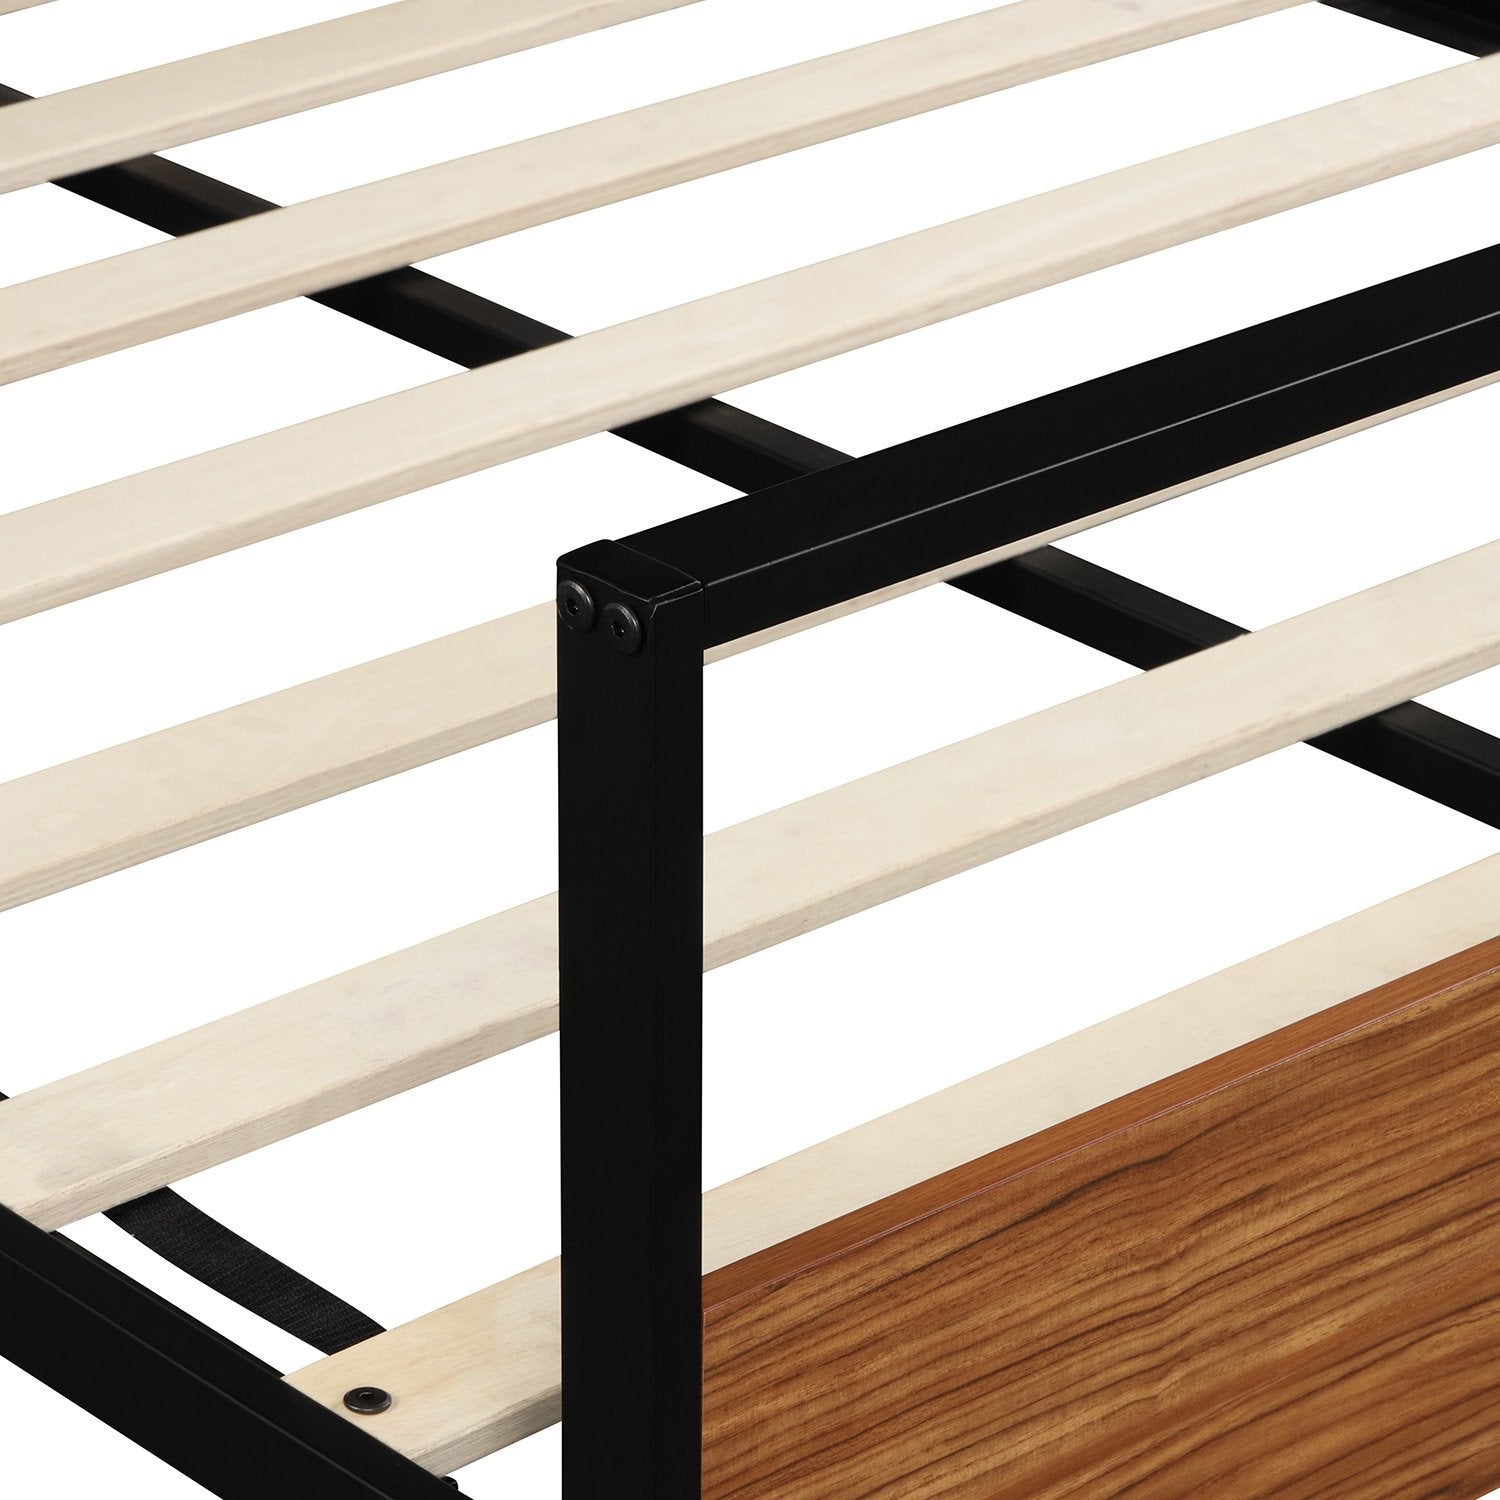 Full Size Black Metal and Wood Platform Bed-Platform Bed-HomeDaybed